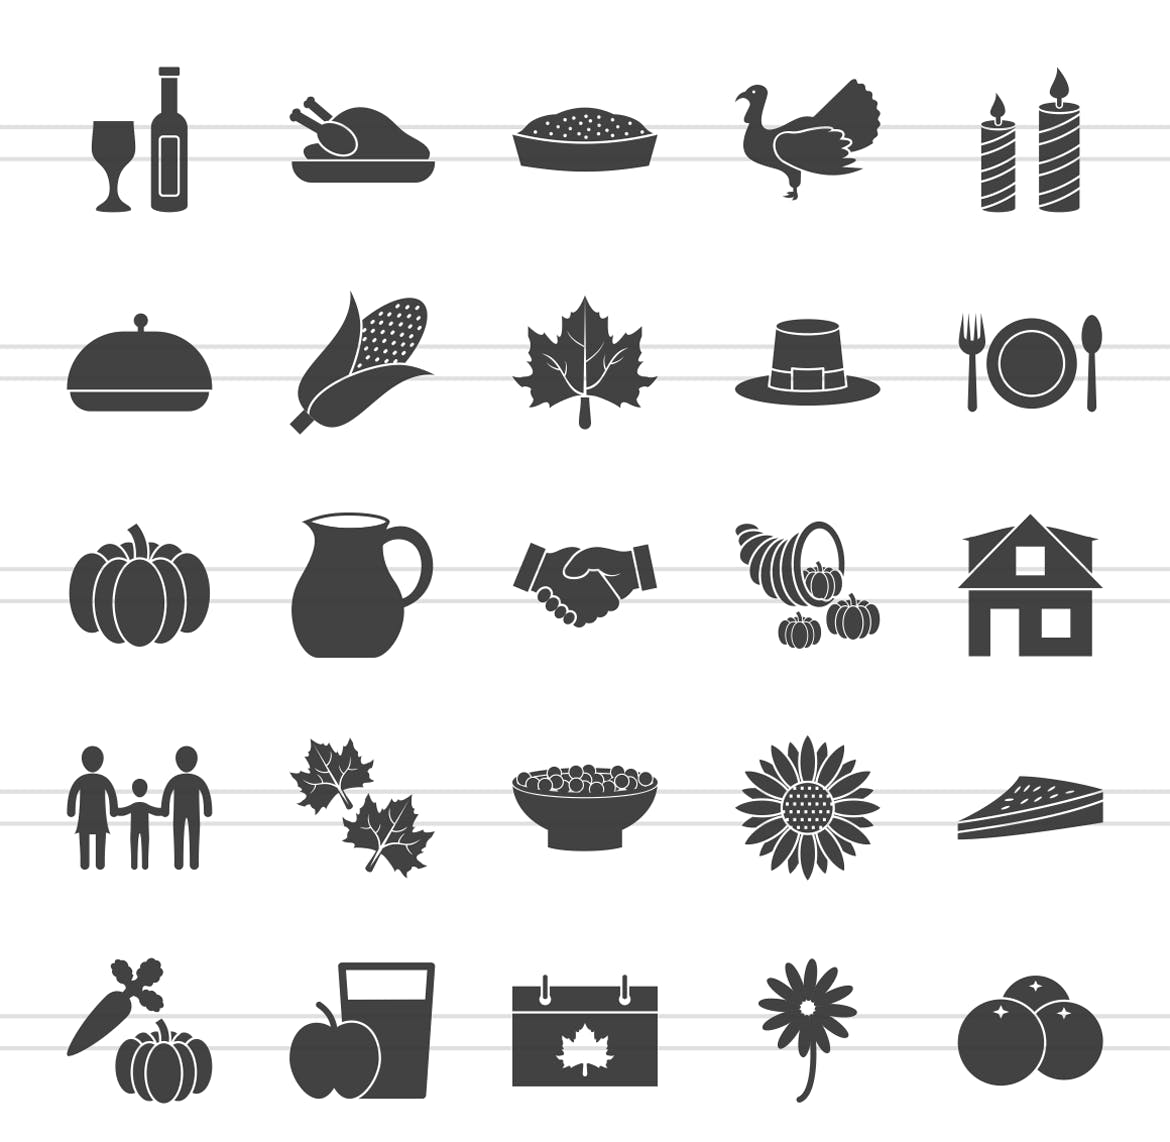 50枚感恩节主题矢量字体蚂蚁素材精选图标 50 Thanksgiving Glyph Icons插图(1)